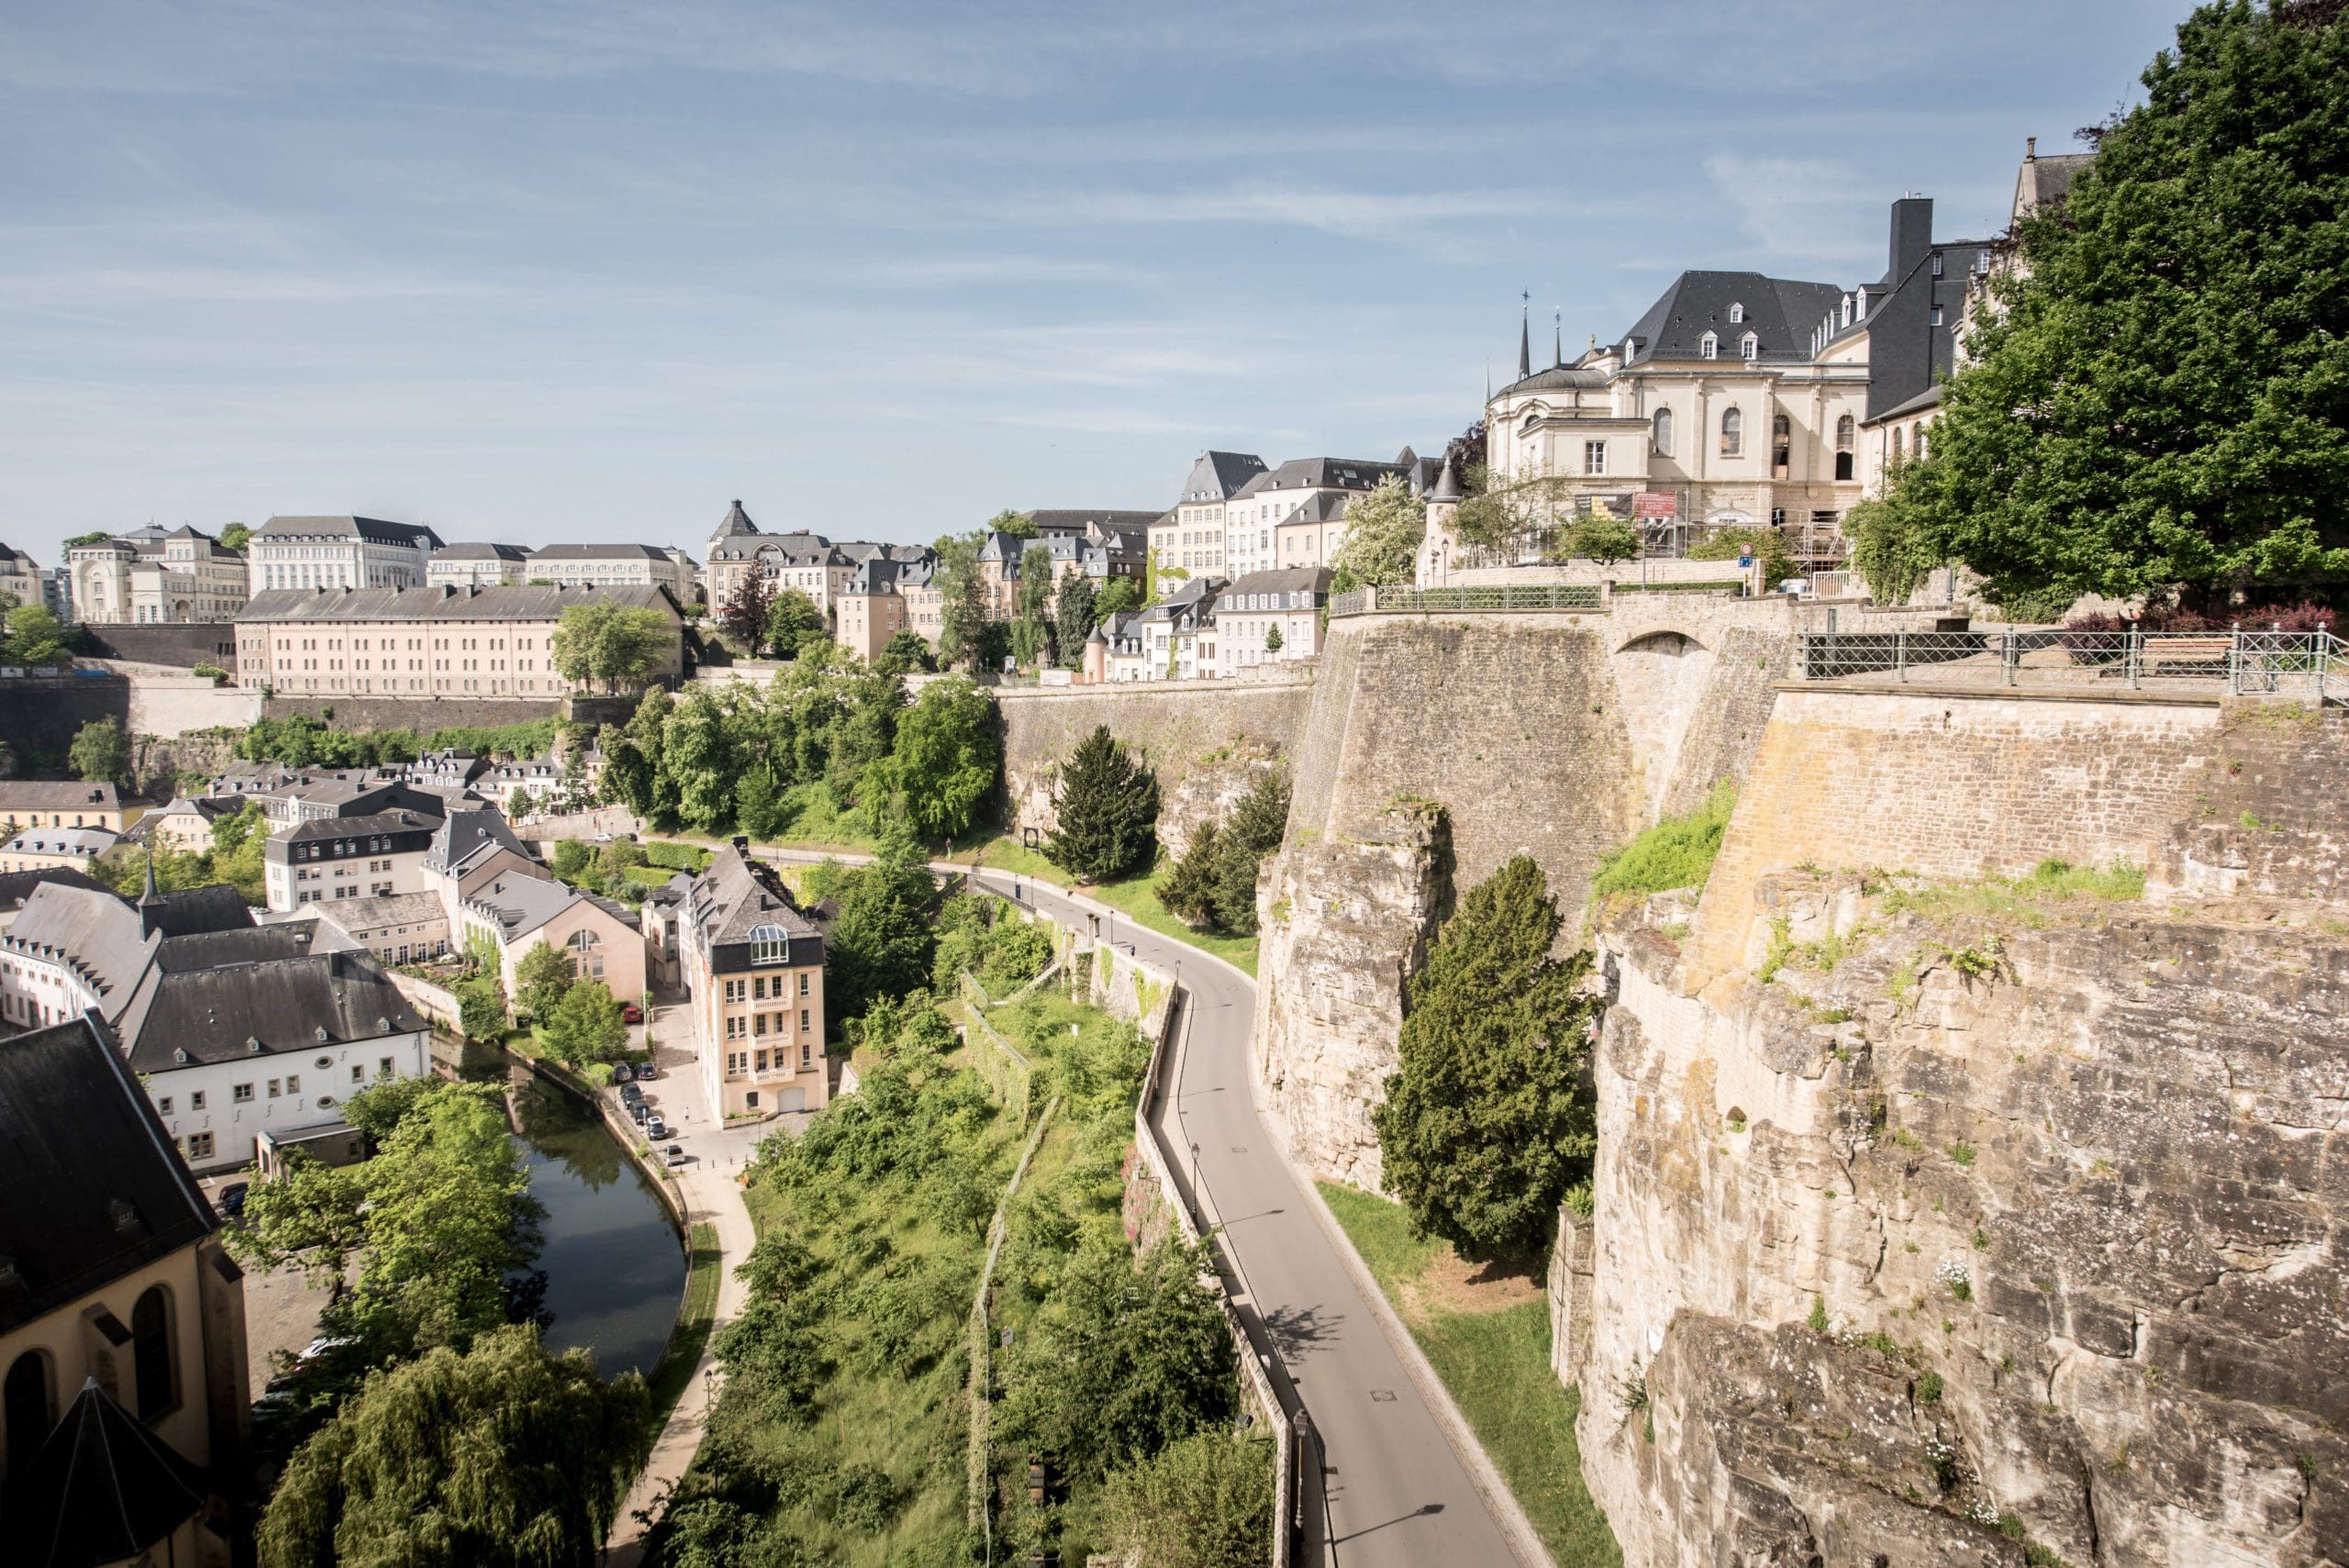 Luxemburg-stad, Luxemburg-stad heeft alles voor een unieke citytrip ‘om de hoek’